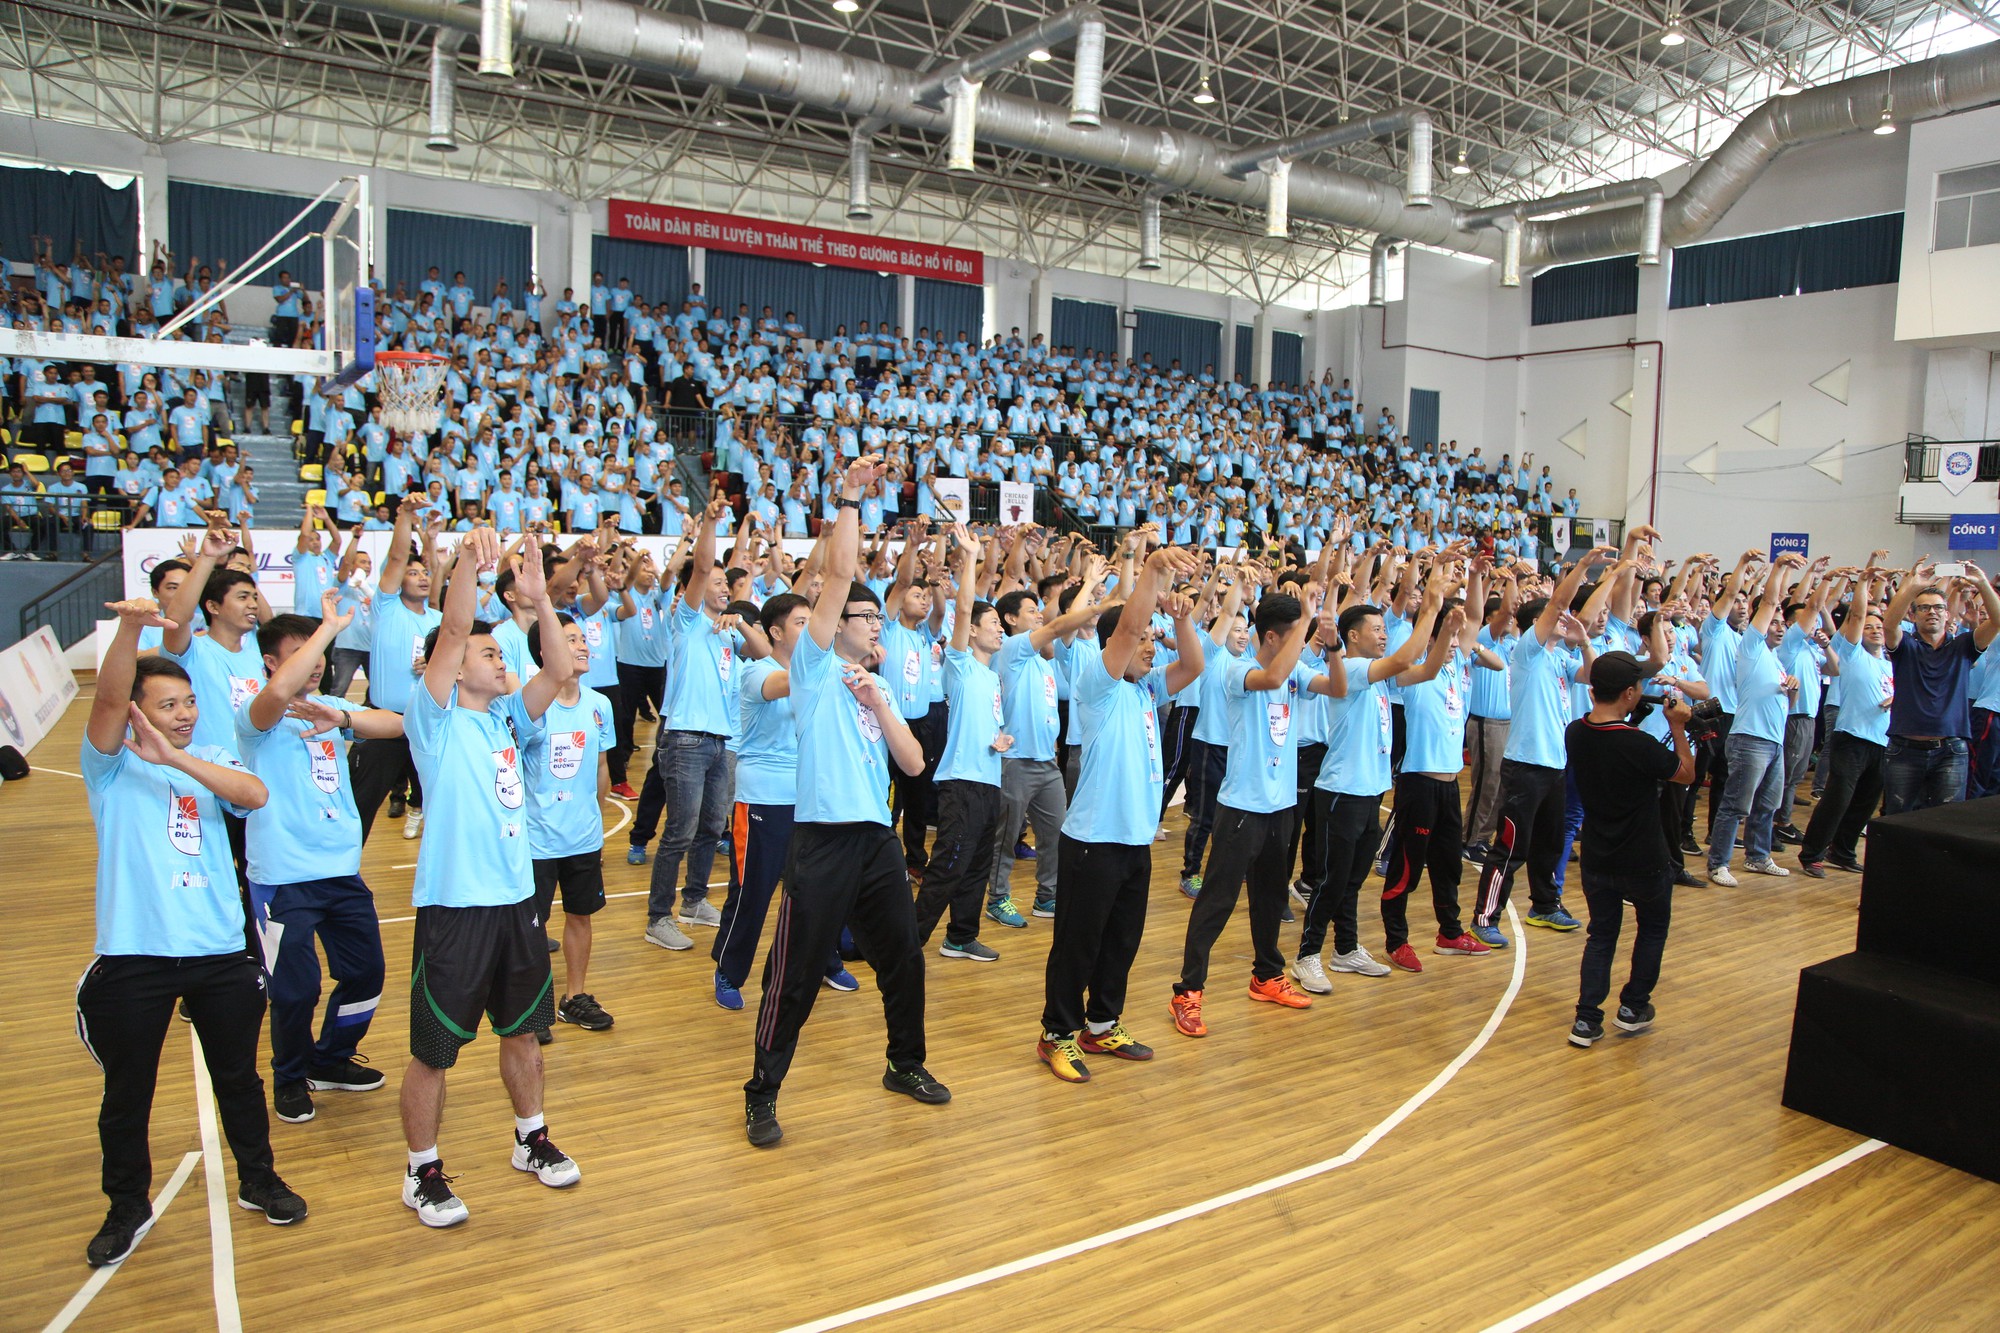 Hơn 1.000 giáo viên thể dục tham dự ngày tập huấn bóng rổ chuẩn NBA tại TP.HCM - Ảnh 1.